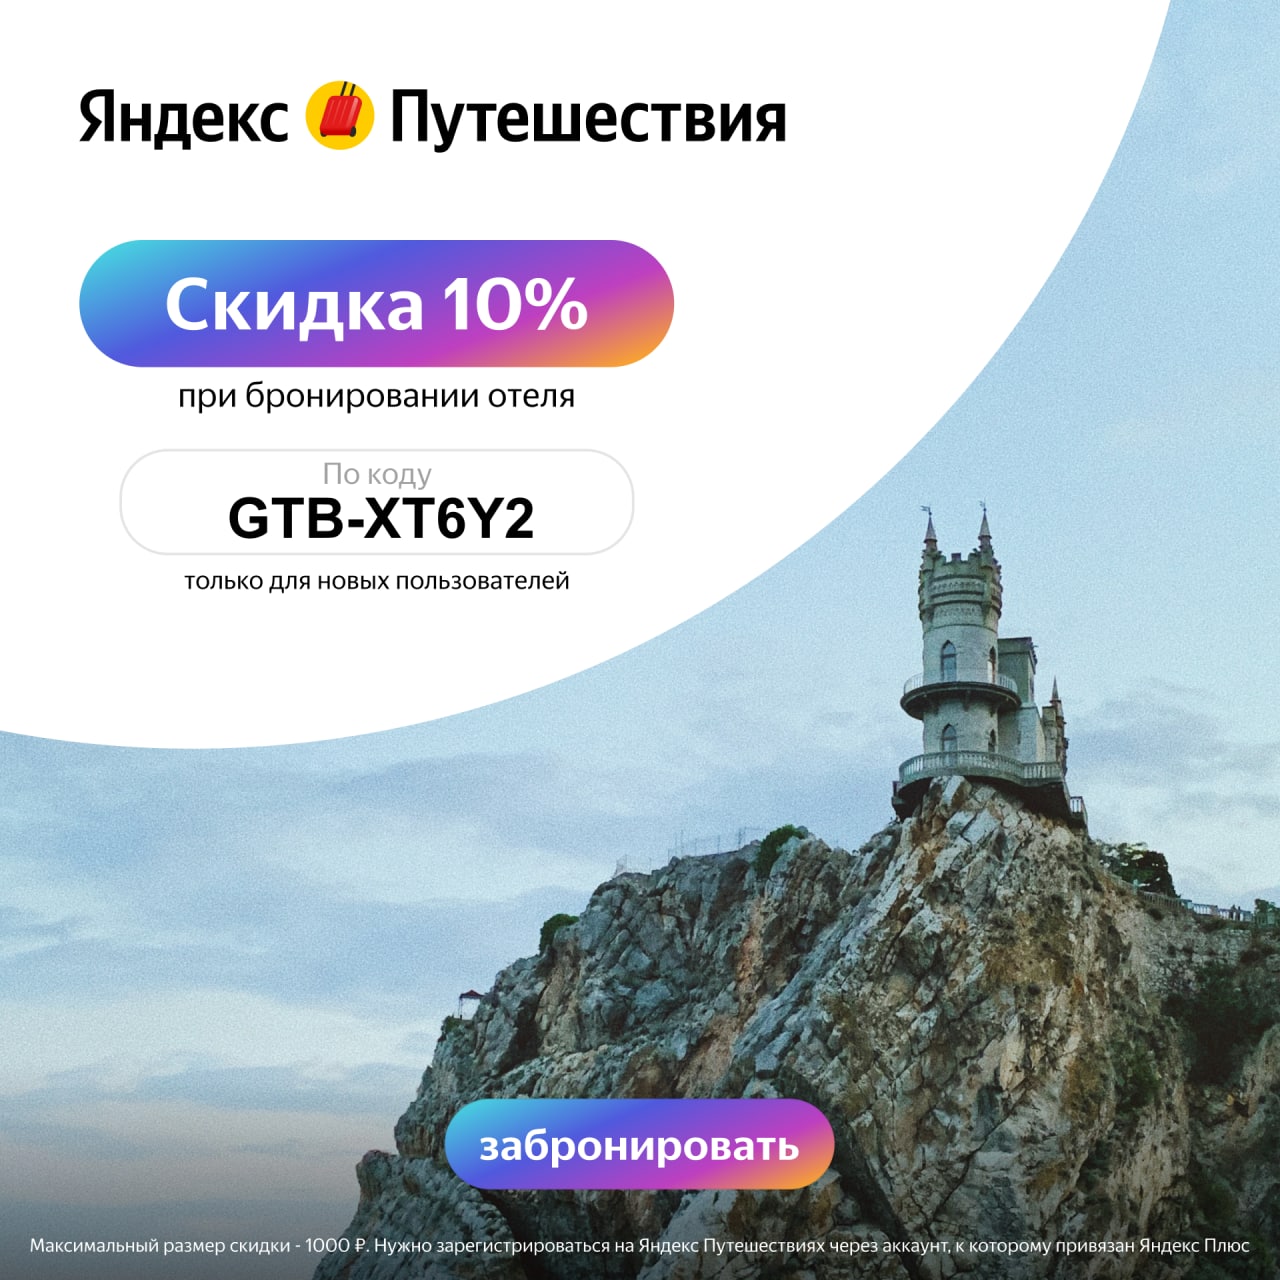 Промокод остров. Яндекс путешествия. Яндекс путешествия бронирование отелей. Промокод Яндекс путешествия. Yandex путешествия промокод.